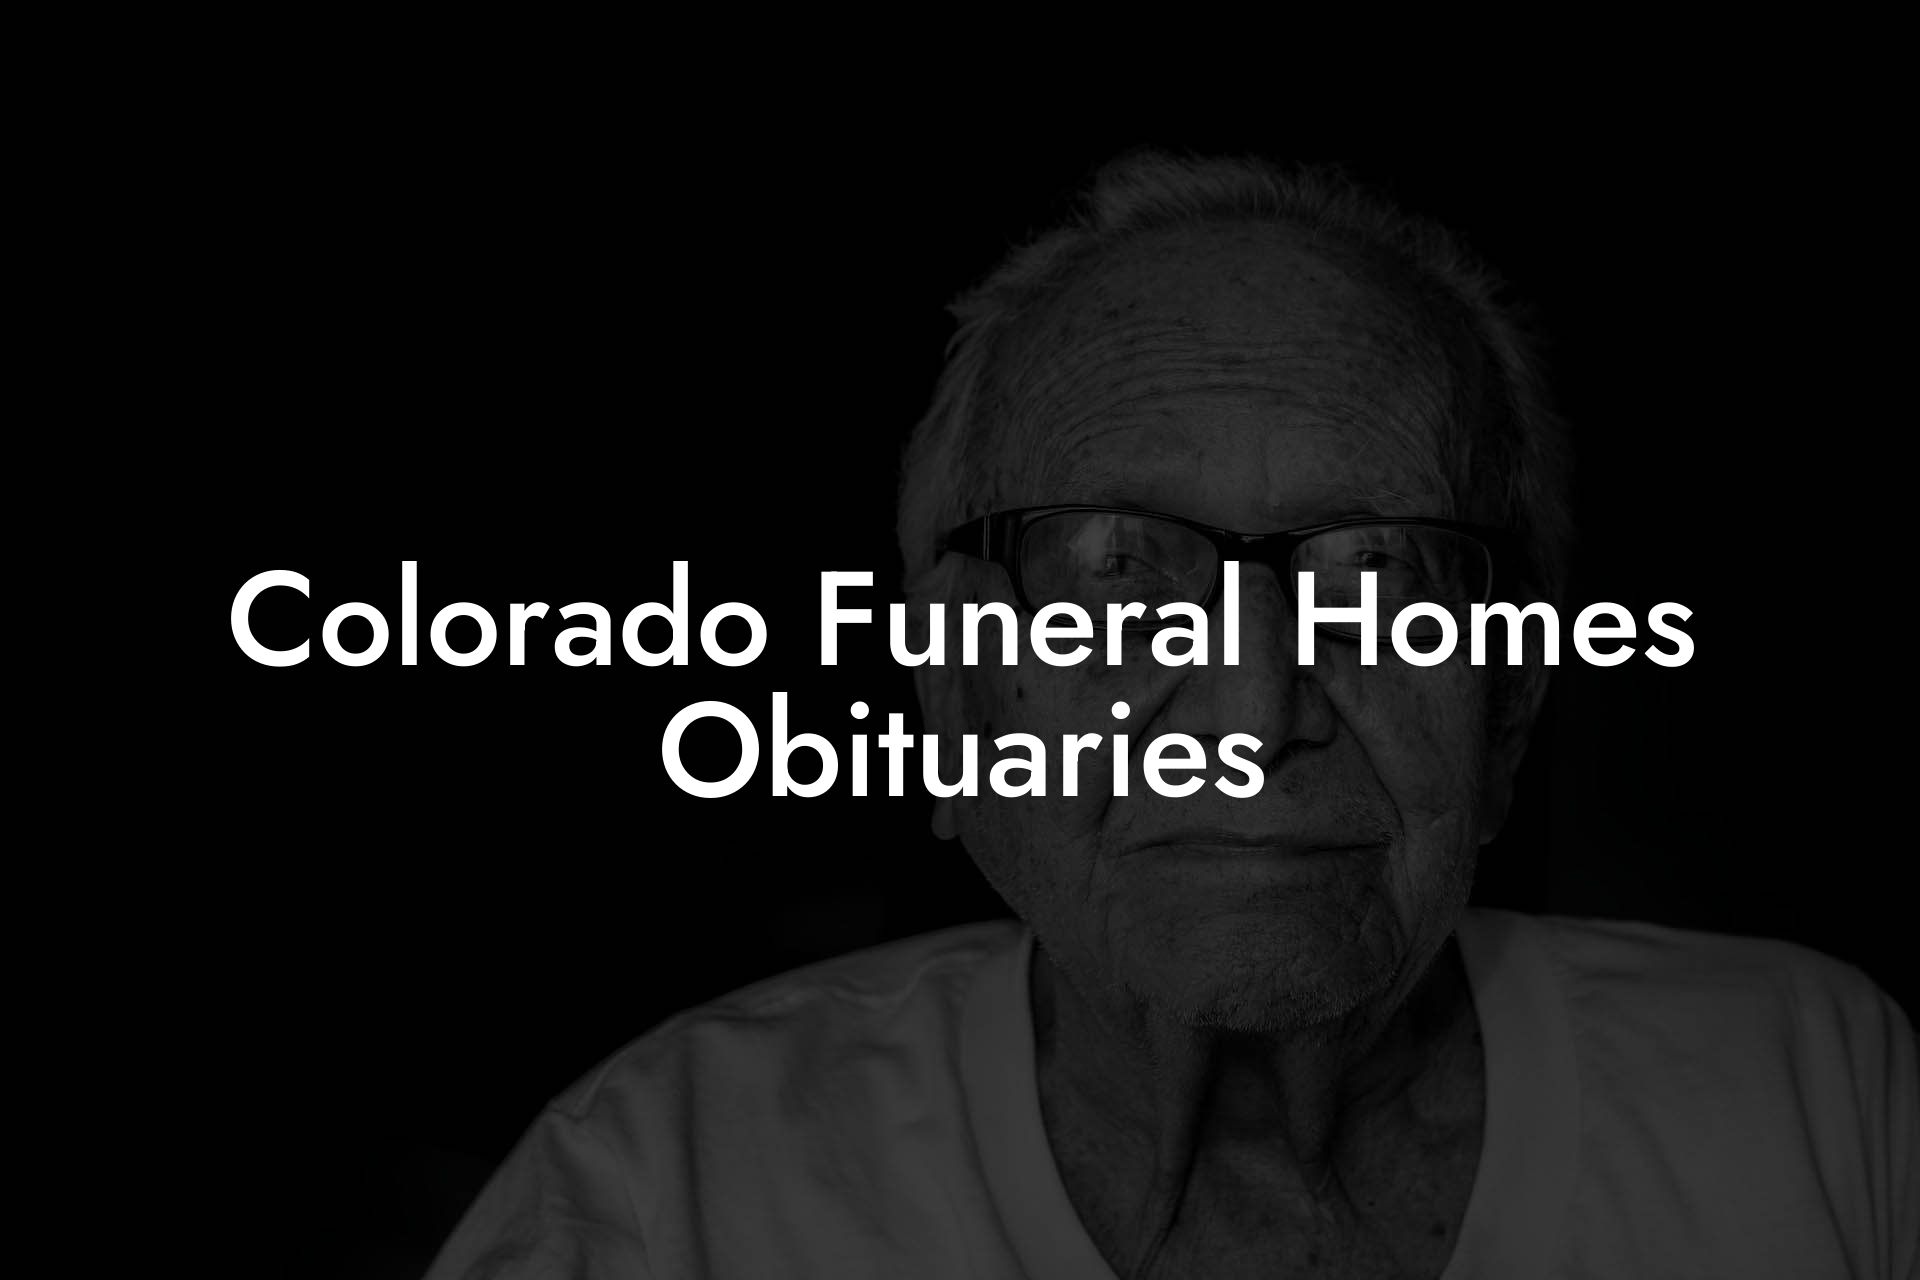 Colorado Funeral Homes Obituaries